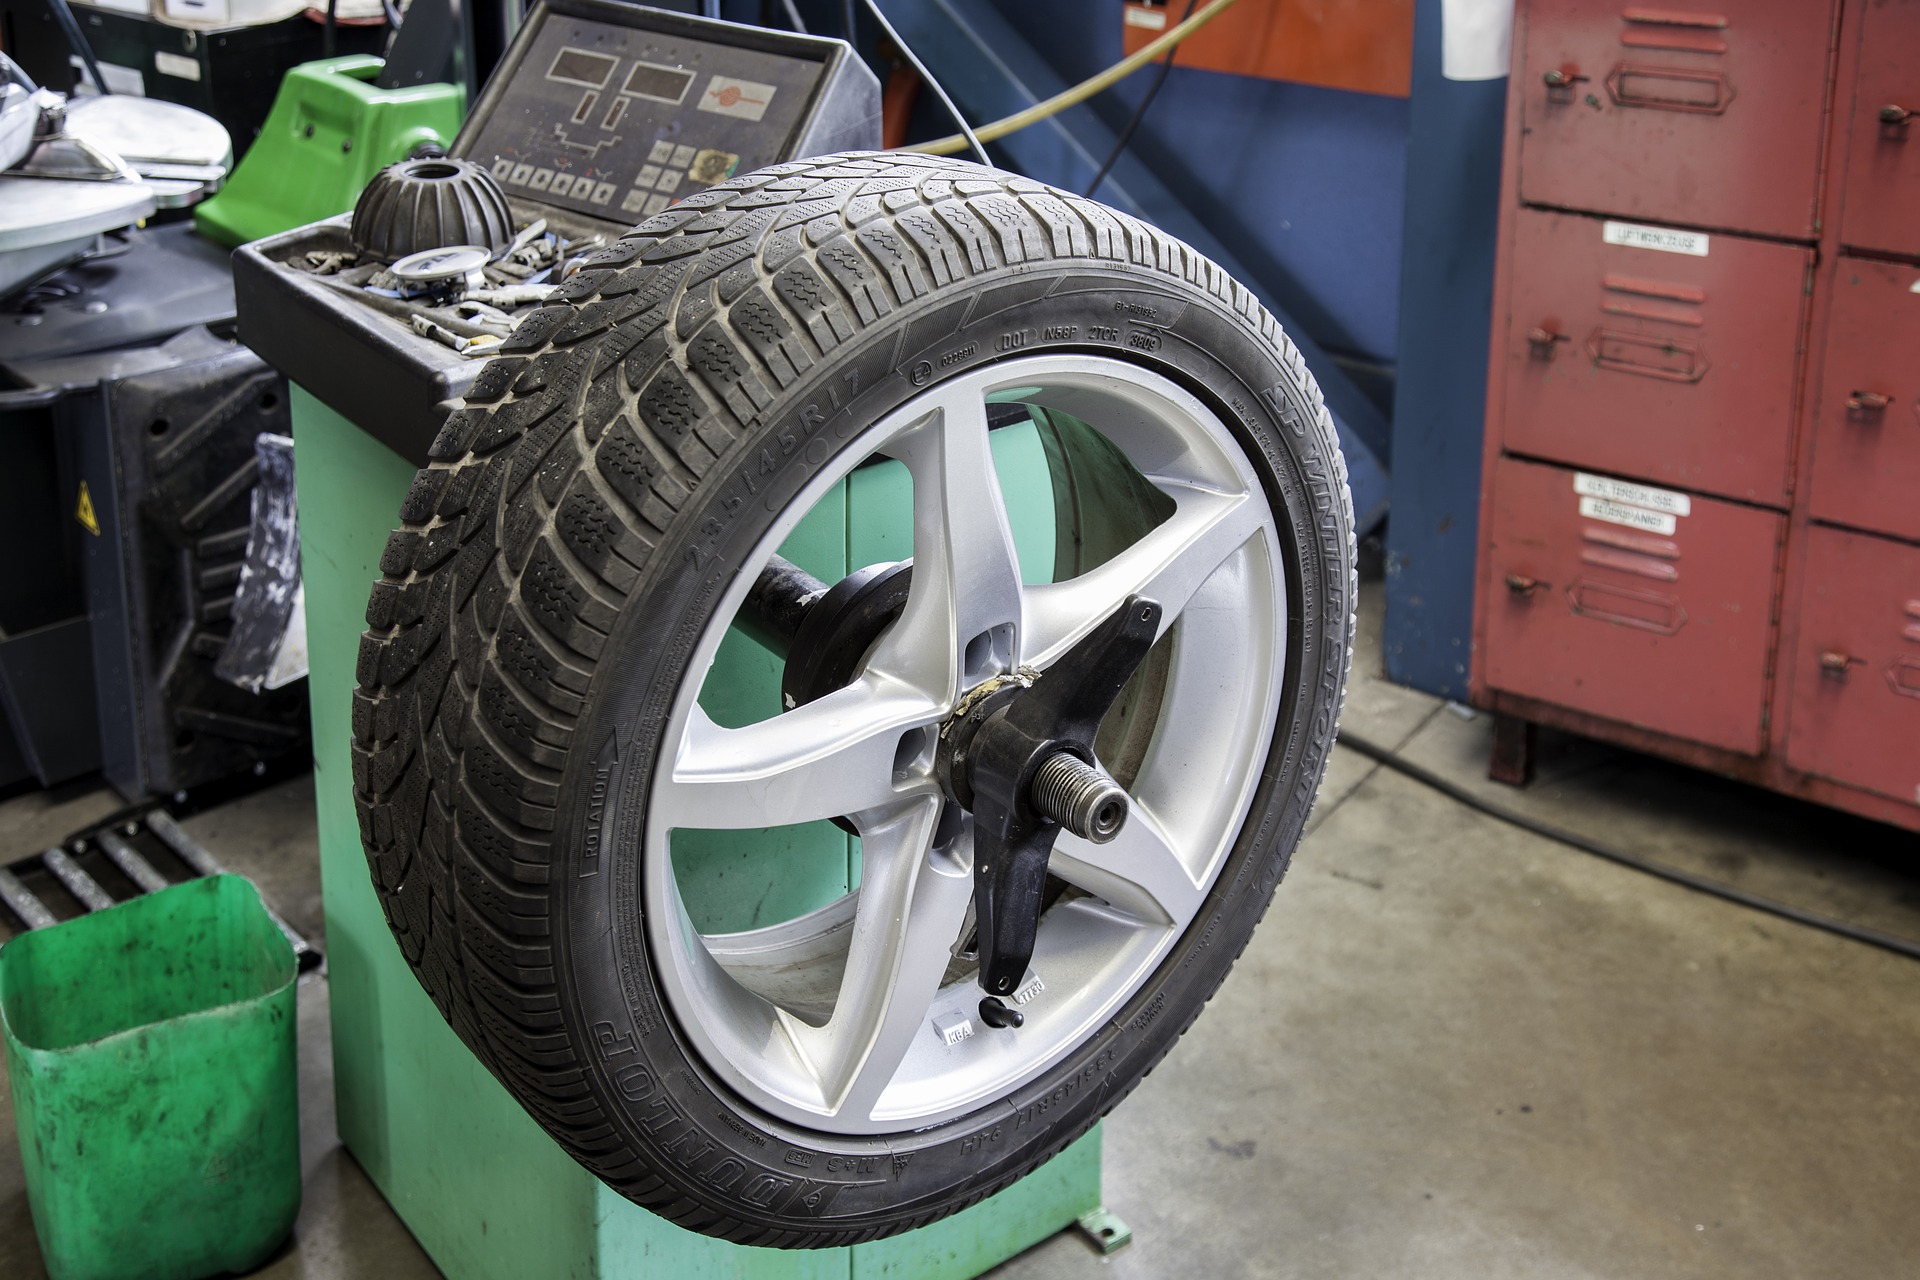 Ignorar problemas nos sistemas de suspensão e direção e aplicar pneus novos traz muita dor de cabeça